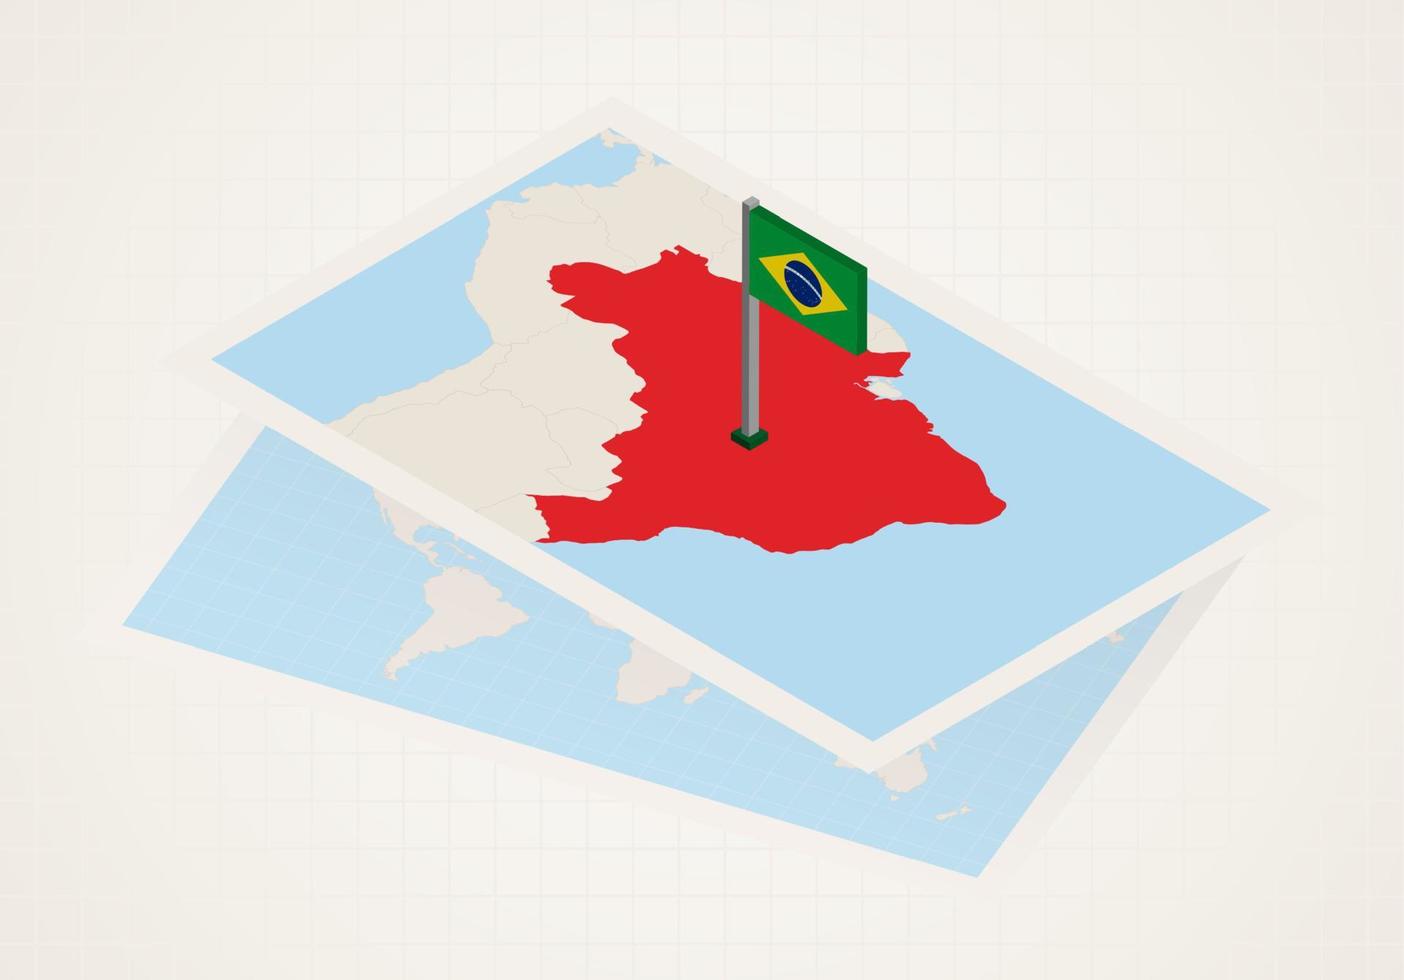 Brasilien vald på Karta med isometrisk flagga av Brasilien. vektor